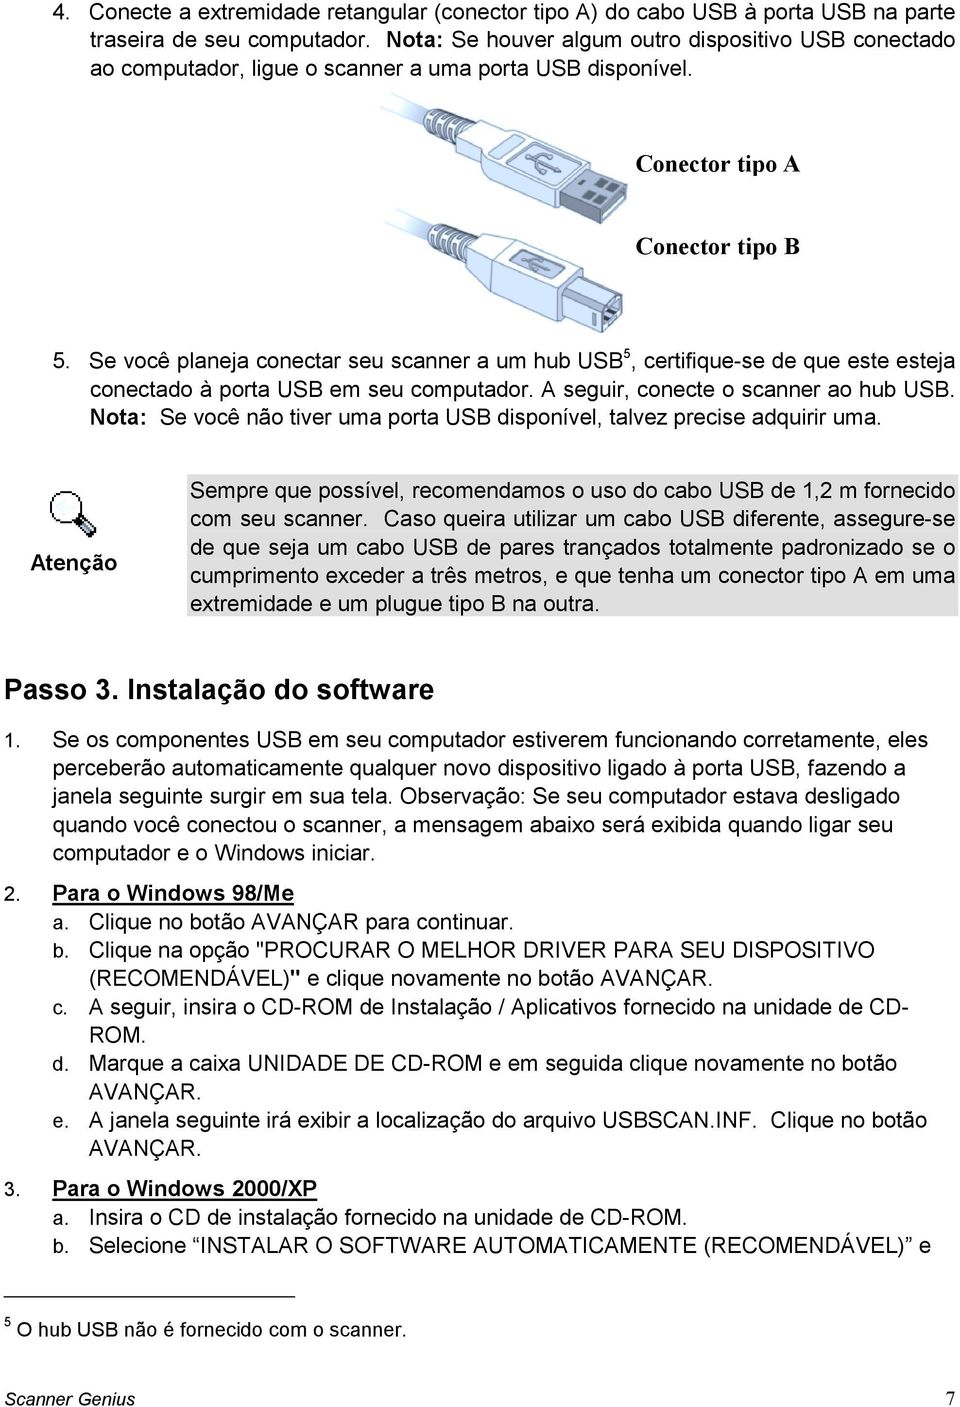 Se você planeja conectar seu scanner a um hub USB 5, certifique-se de que este esteja conectado à porta USB em seu computador. A seguir, conecte o scanner ao hub USB.